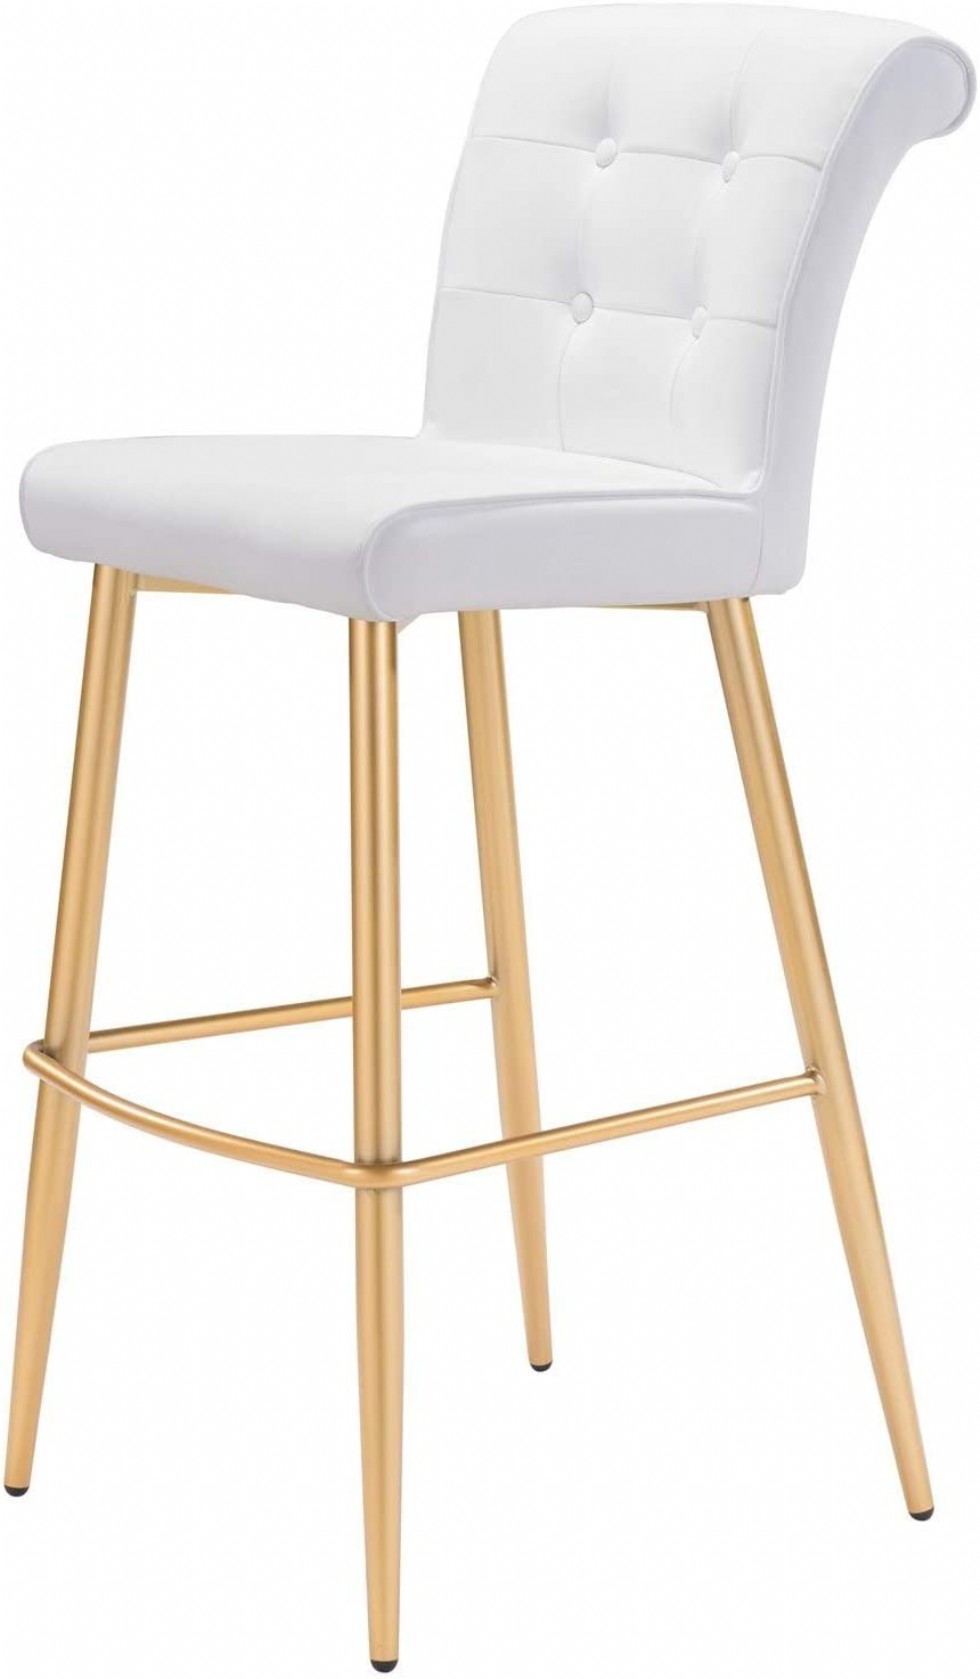 Altın Renk Amerikan Bar Sandalyesi Uzun Yüksek Ayaklı Modern Tasarım